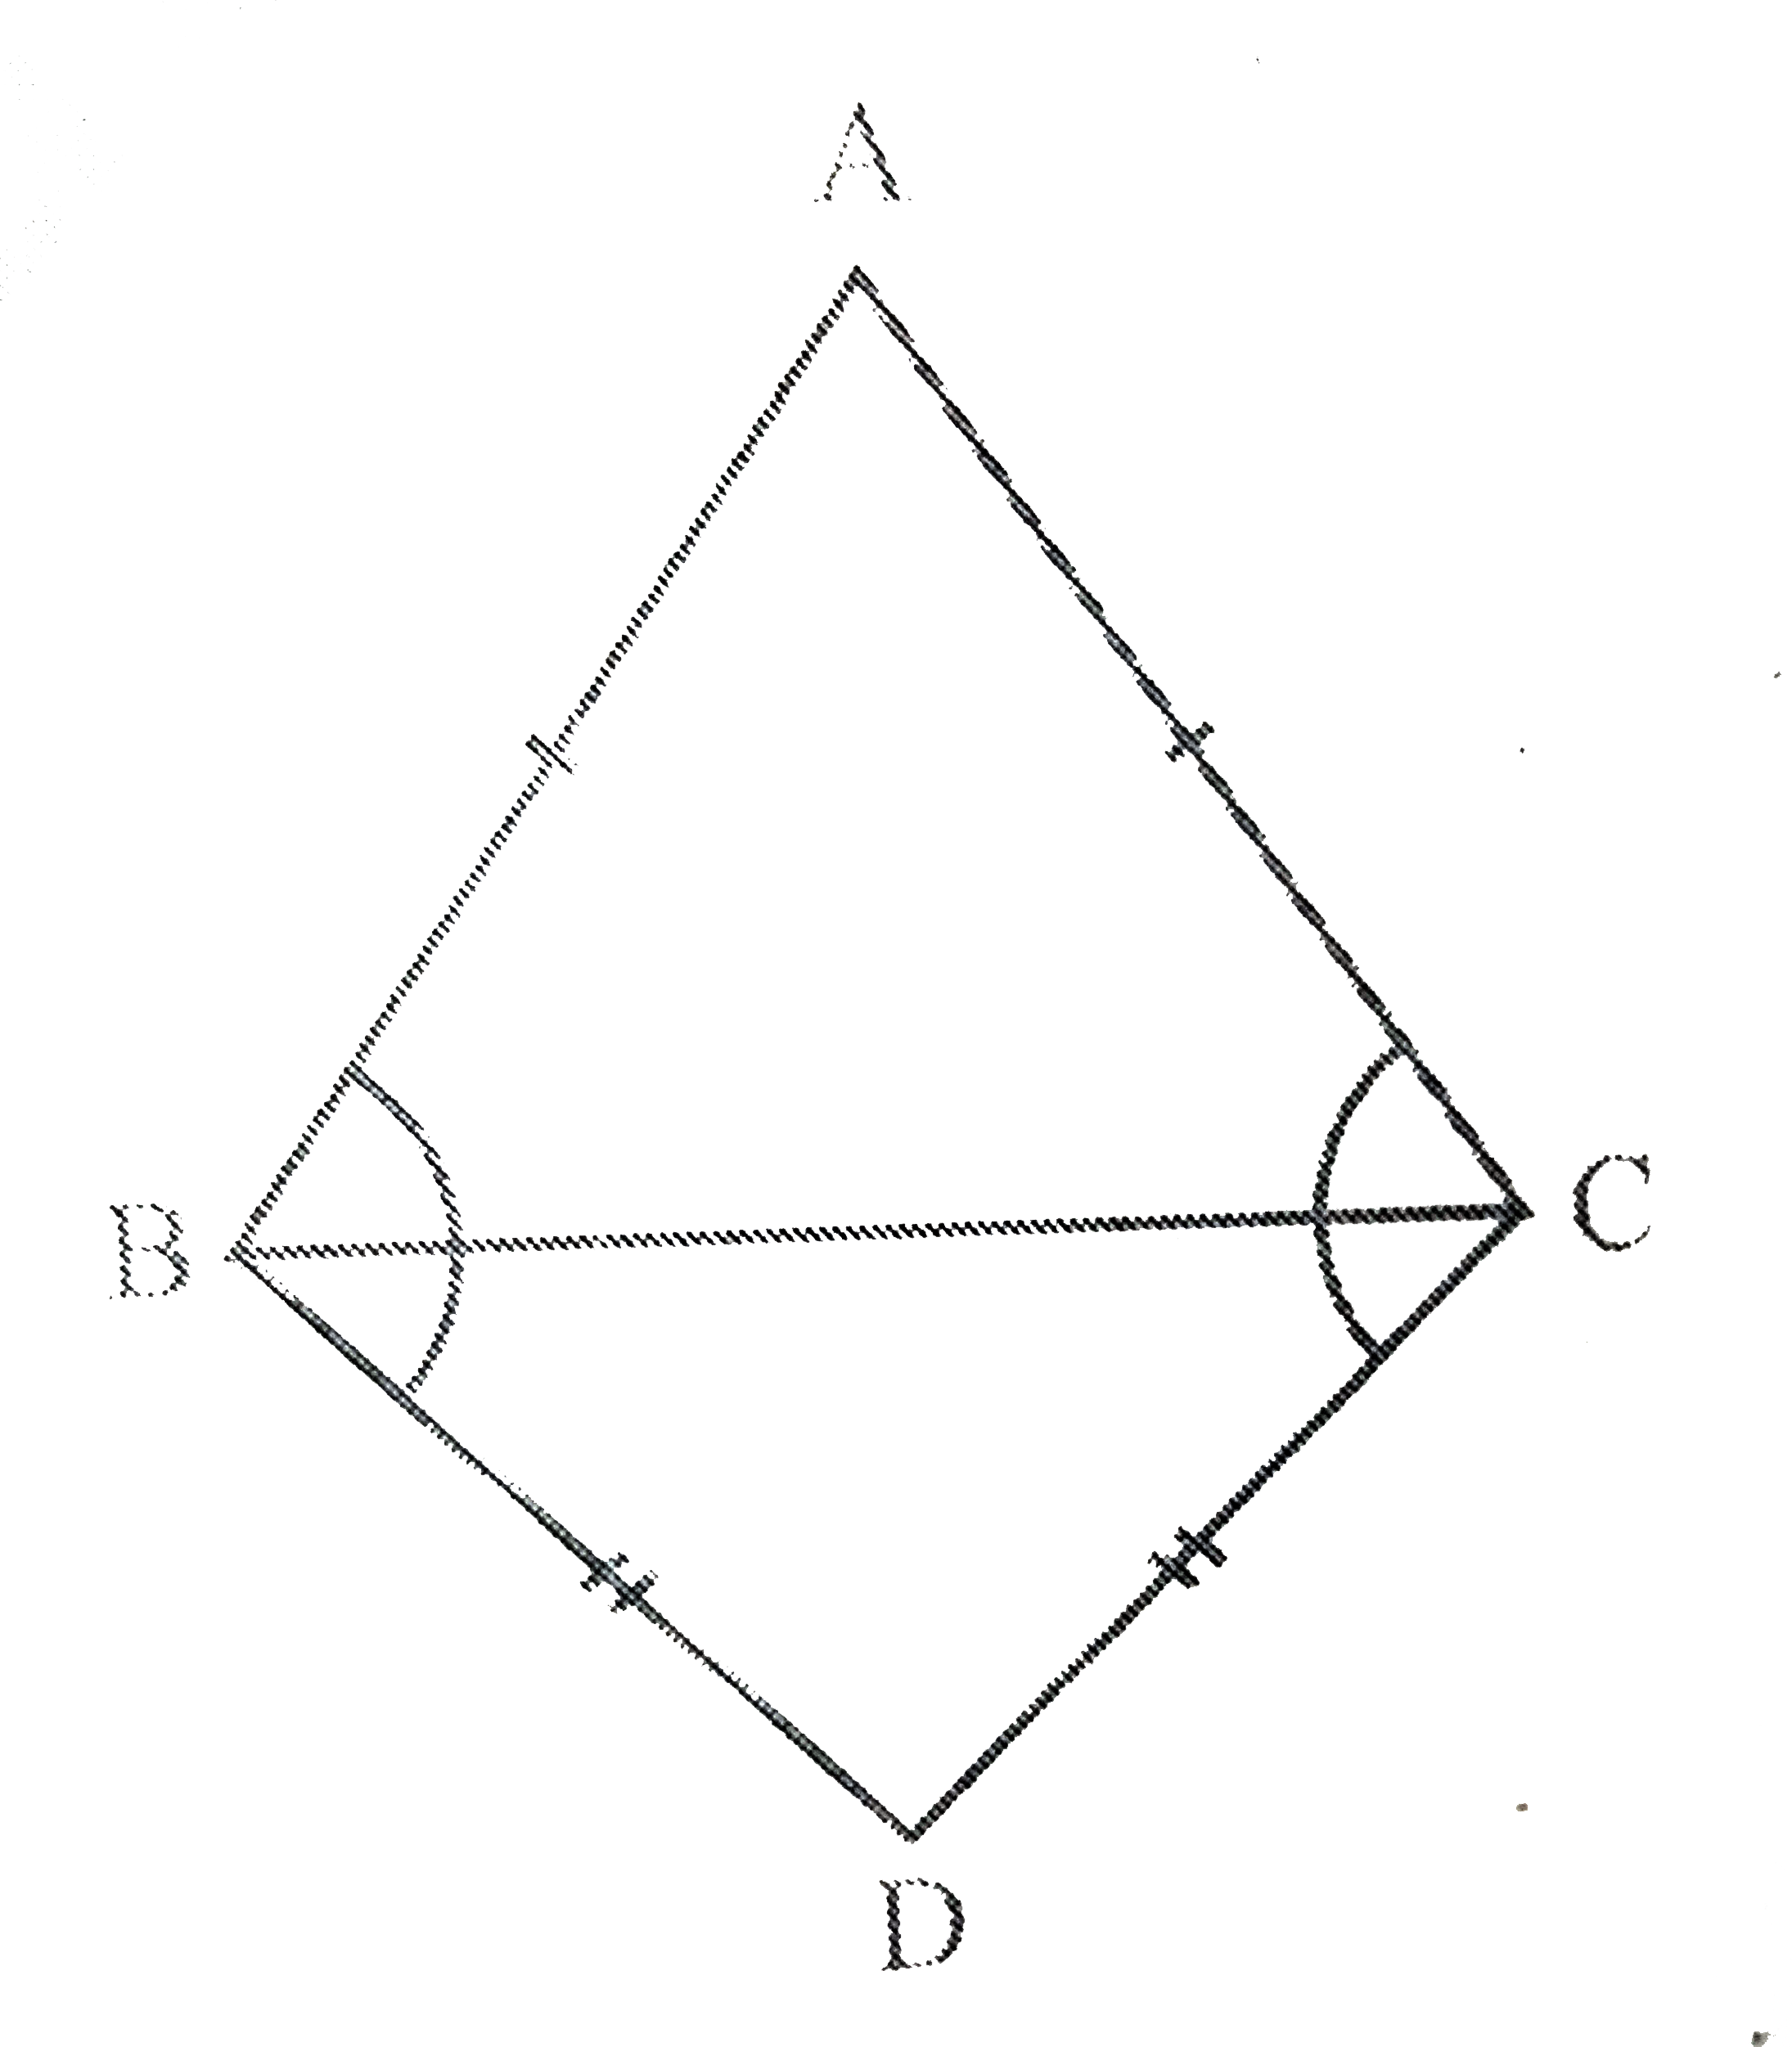 ABC और DBC समान आधार BC पर स्थित दो समद्विबाहु त्रिभुज है। दर्शाइए कि angle ABD = angle ACD   है।